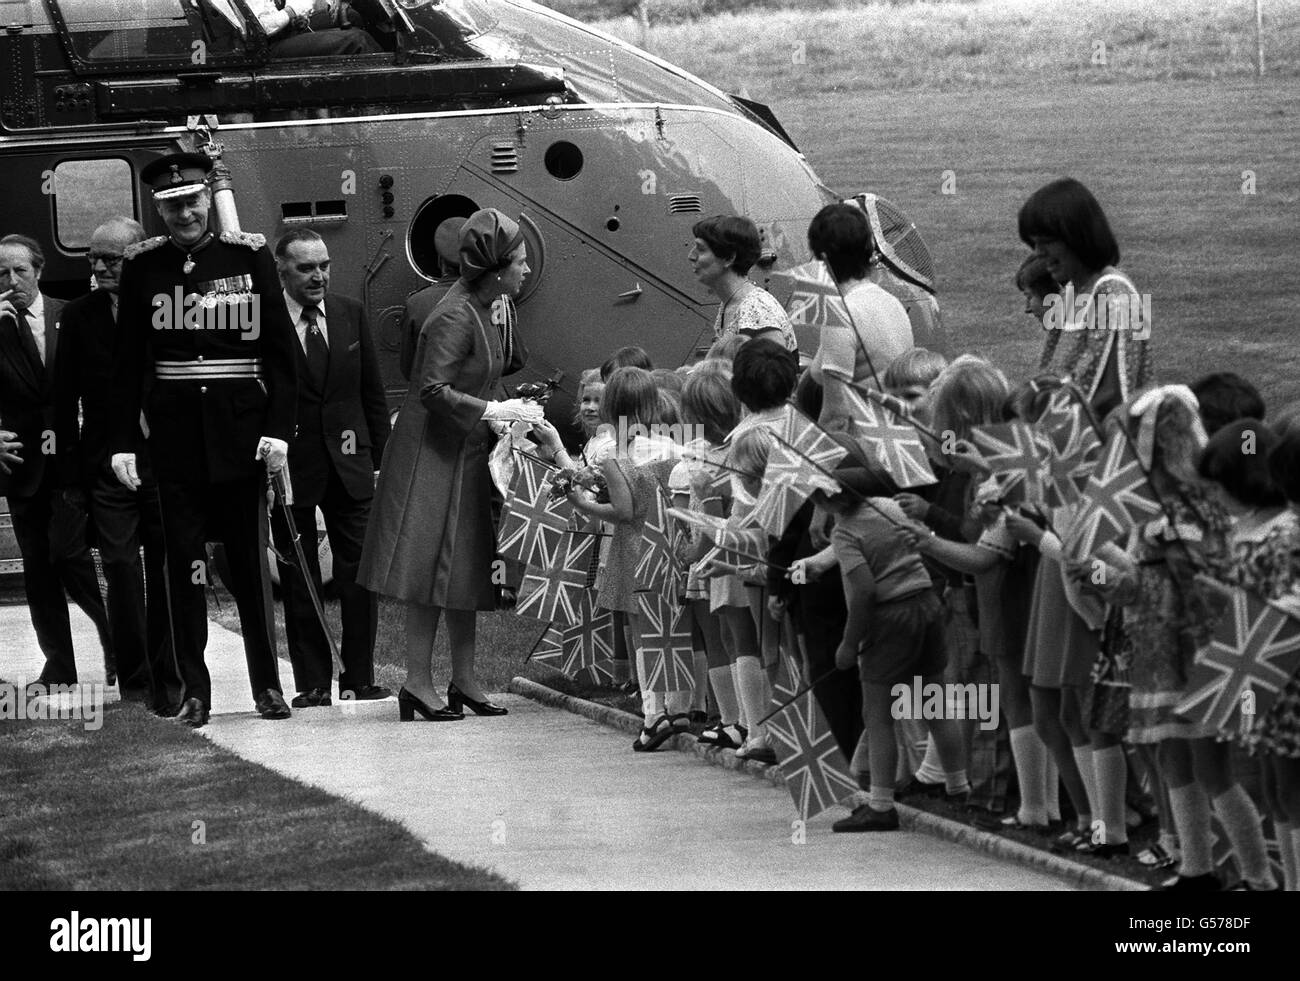 La regina Elisabetta II con bambini che sventolano la bandiera dopo il suo arrivo in elicottero - il suo primo volo in uno - allo storico Castello di Hillsborough, a 14 miglia da Belfast, all'inizio della sua visita Silver Jubilee di 2 giorni a Ulster. E' la prima volta in 11 anni che la Regina visita la Provincia. Foto Stock